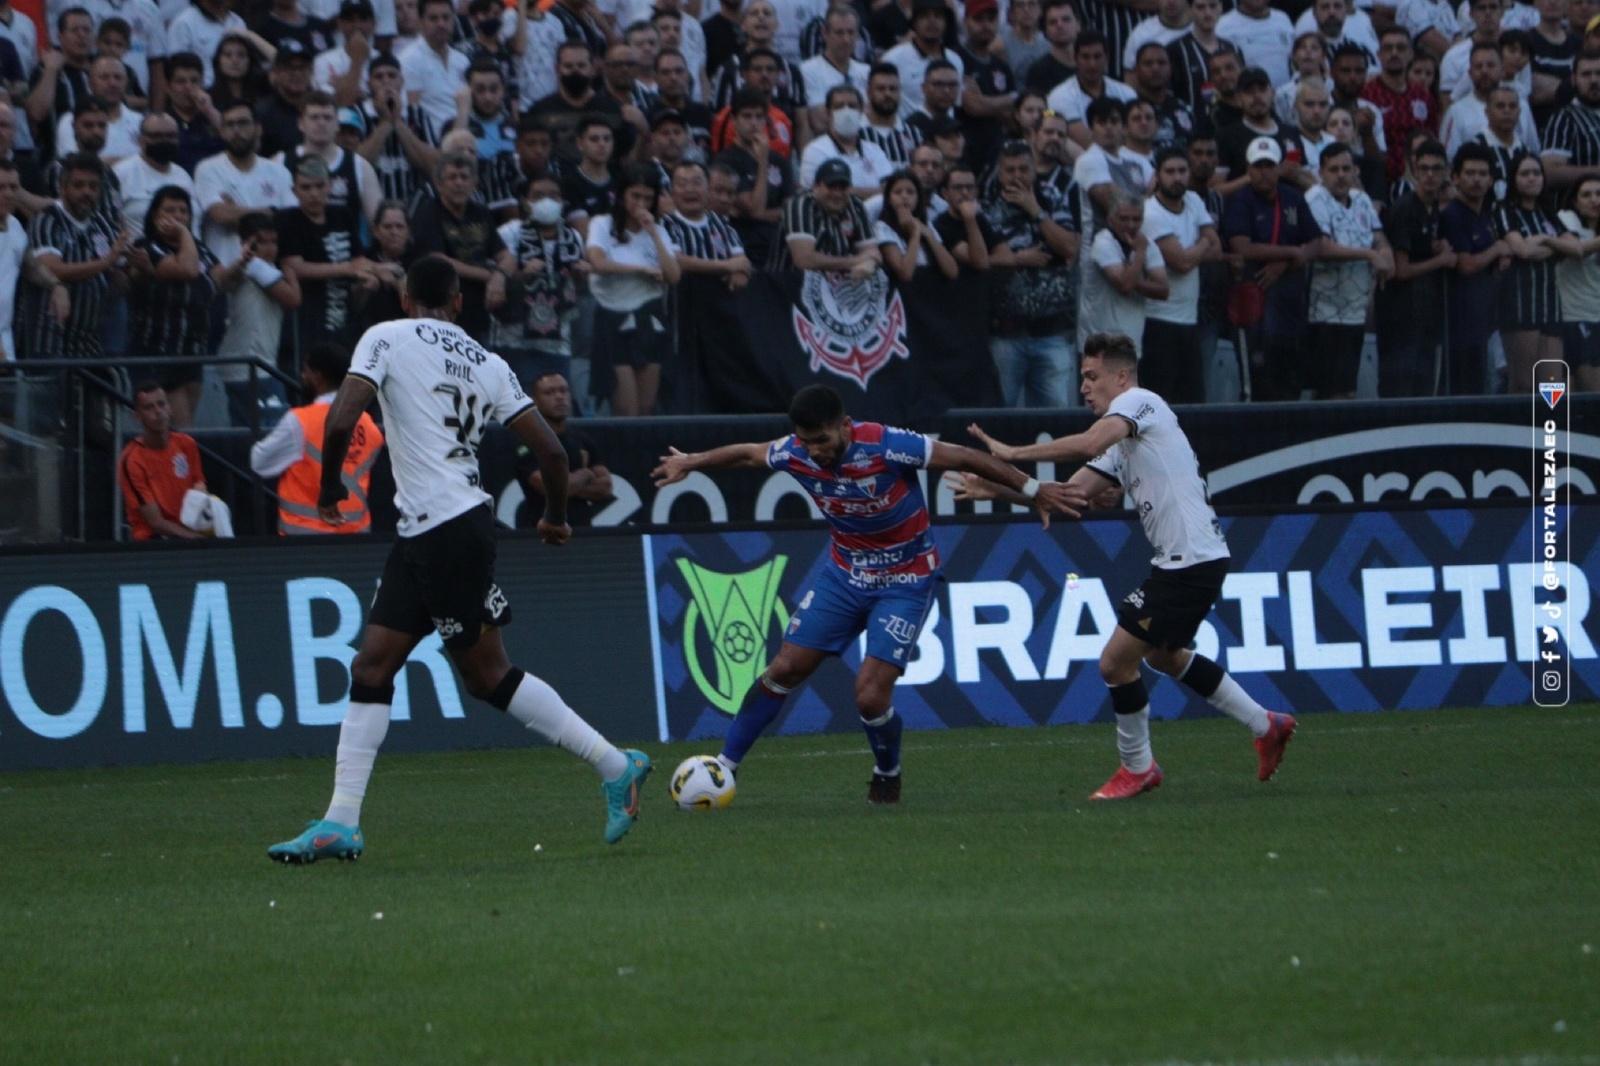 Atletas de Fortaleza e Corinthians disputam bola